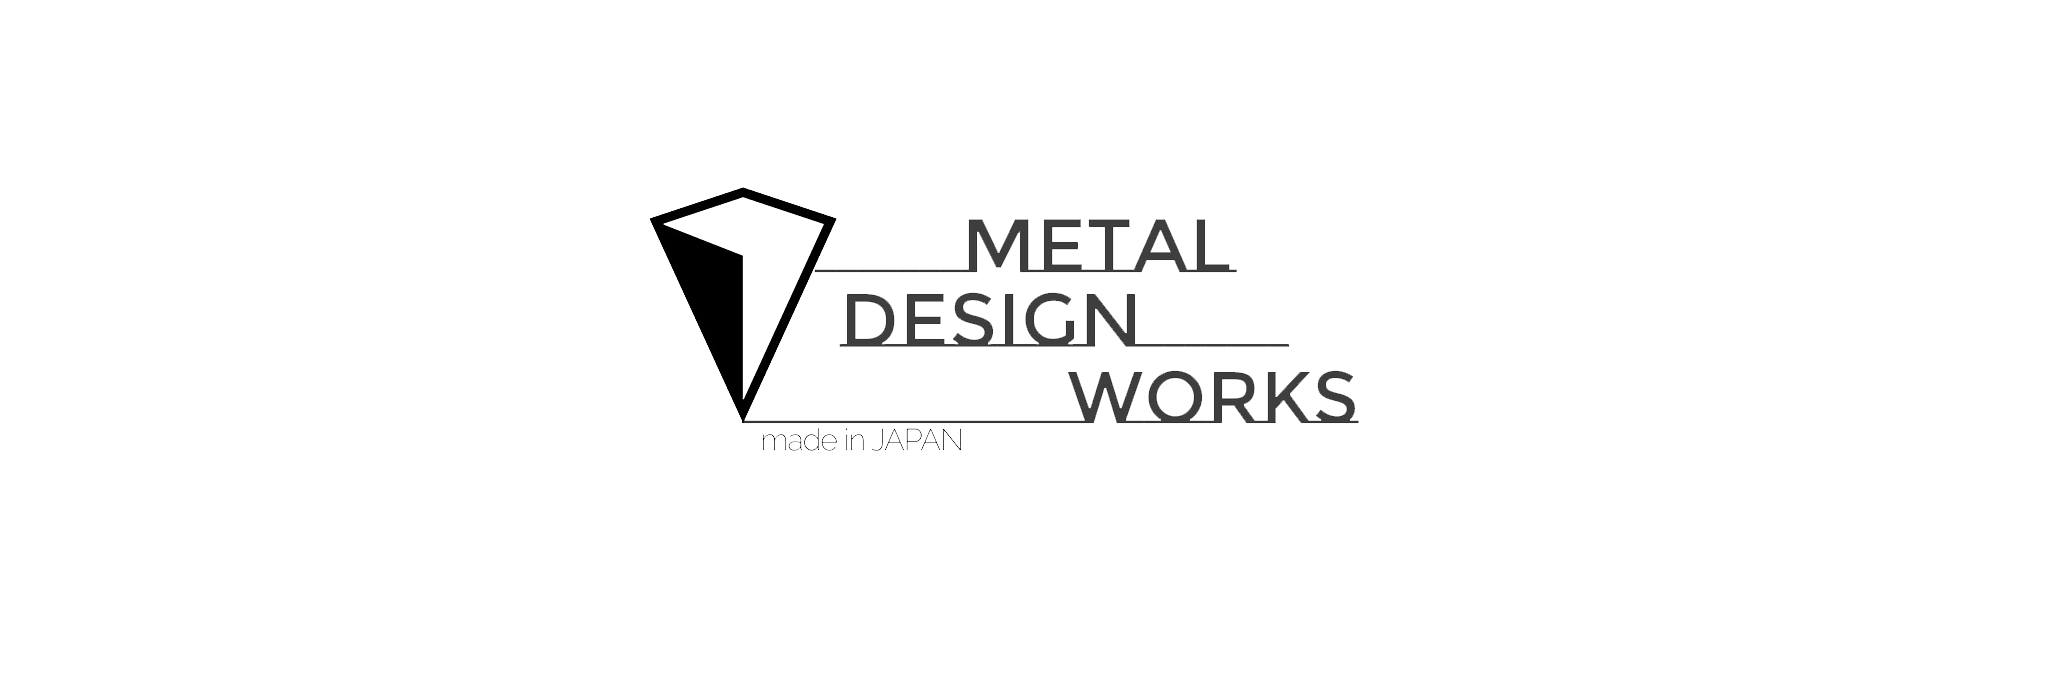 metal design works